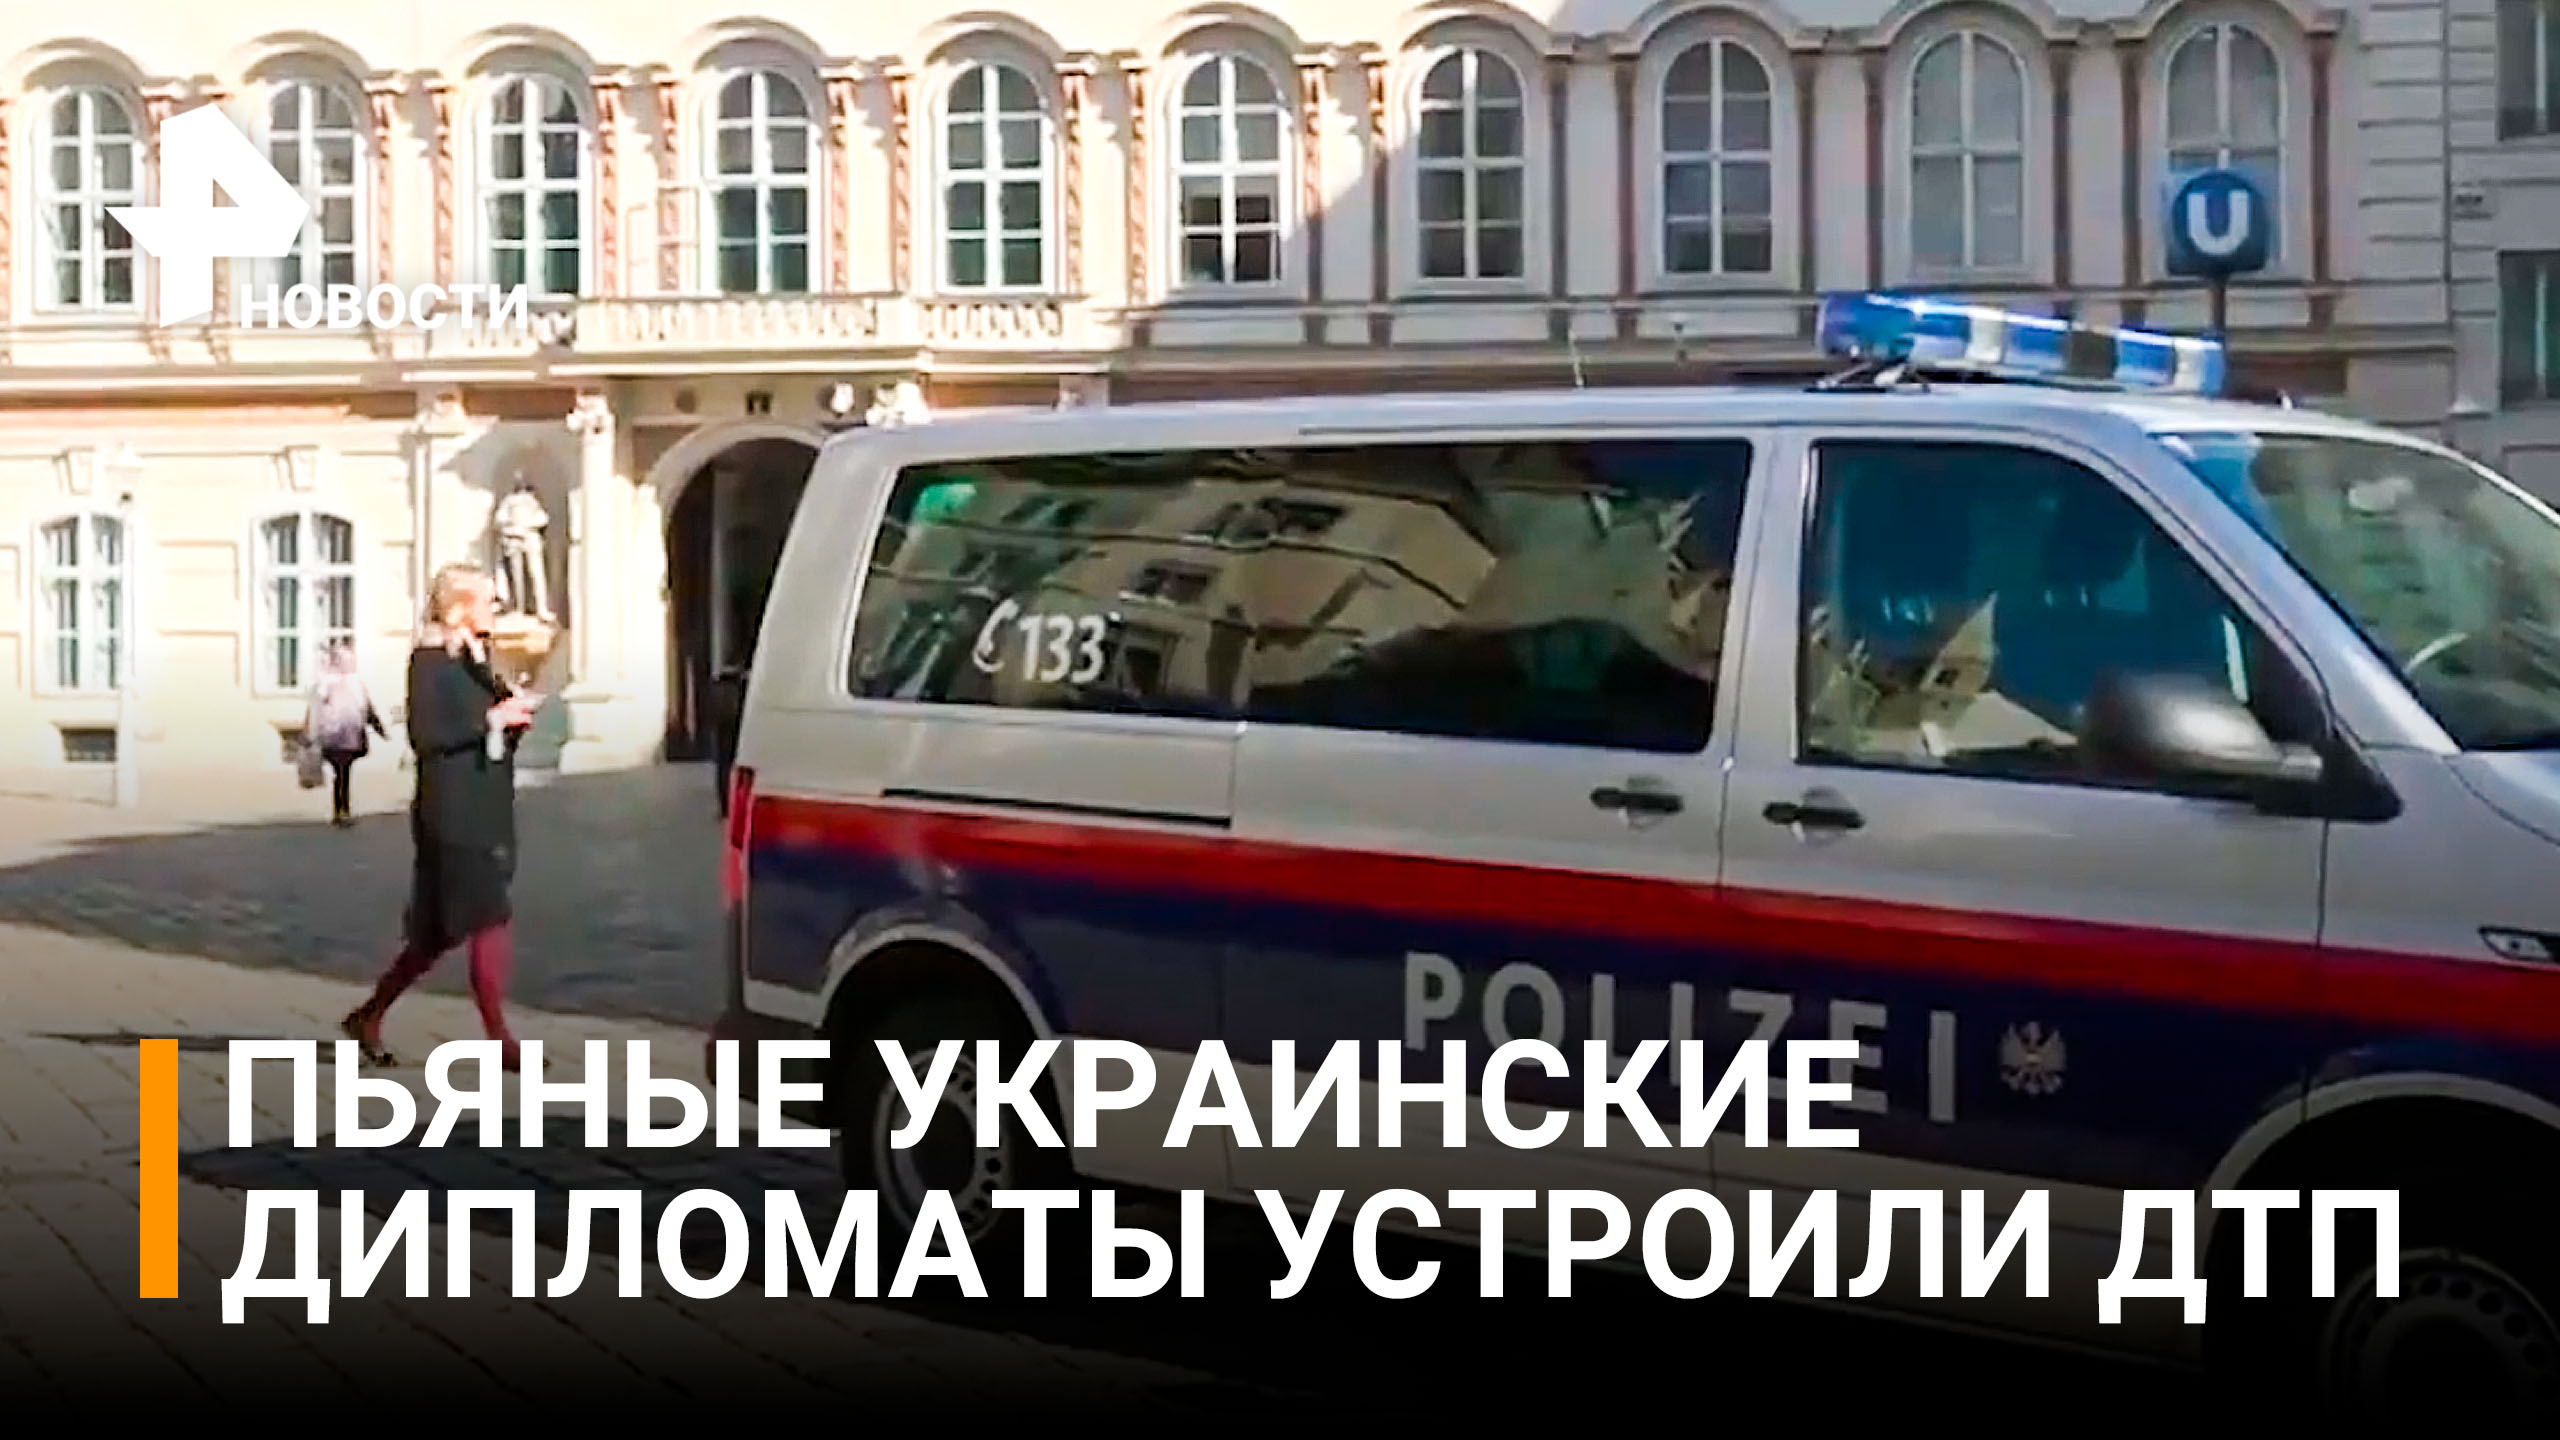 Нетрезвые украинские дипломаты устроили в Вене ДТП и погоню с полицией / РЕН Новости